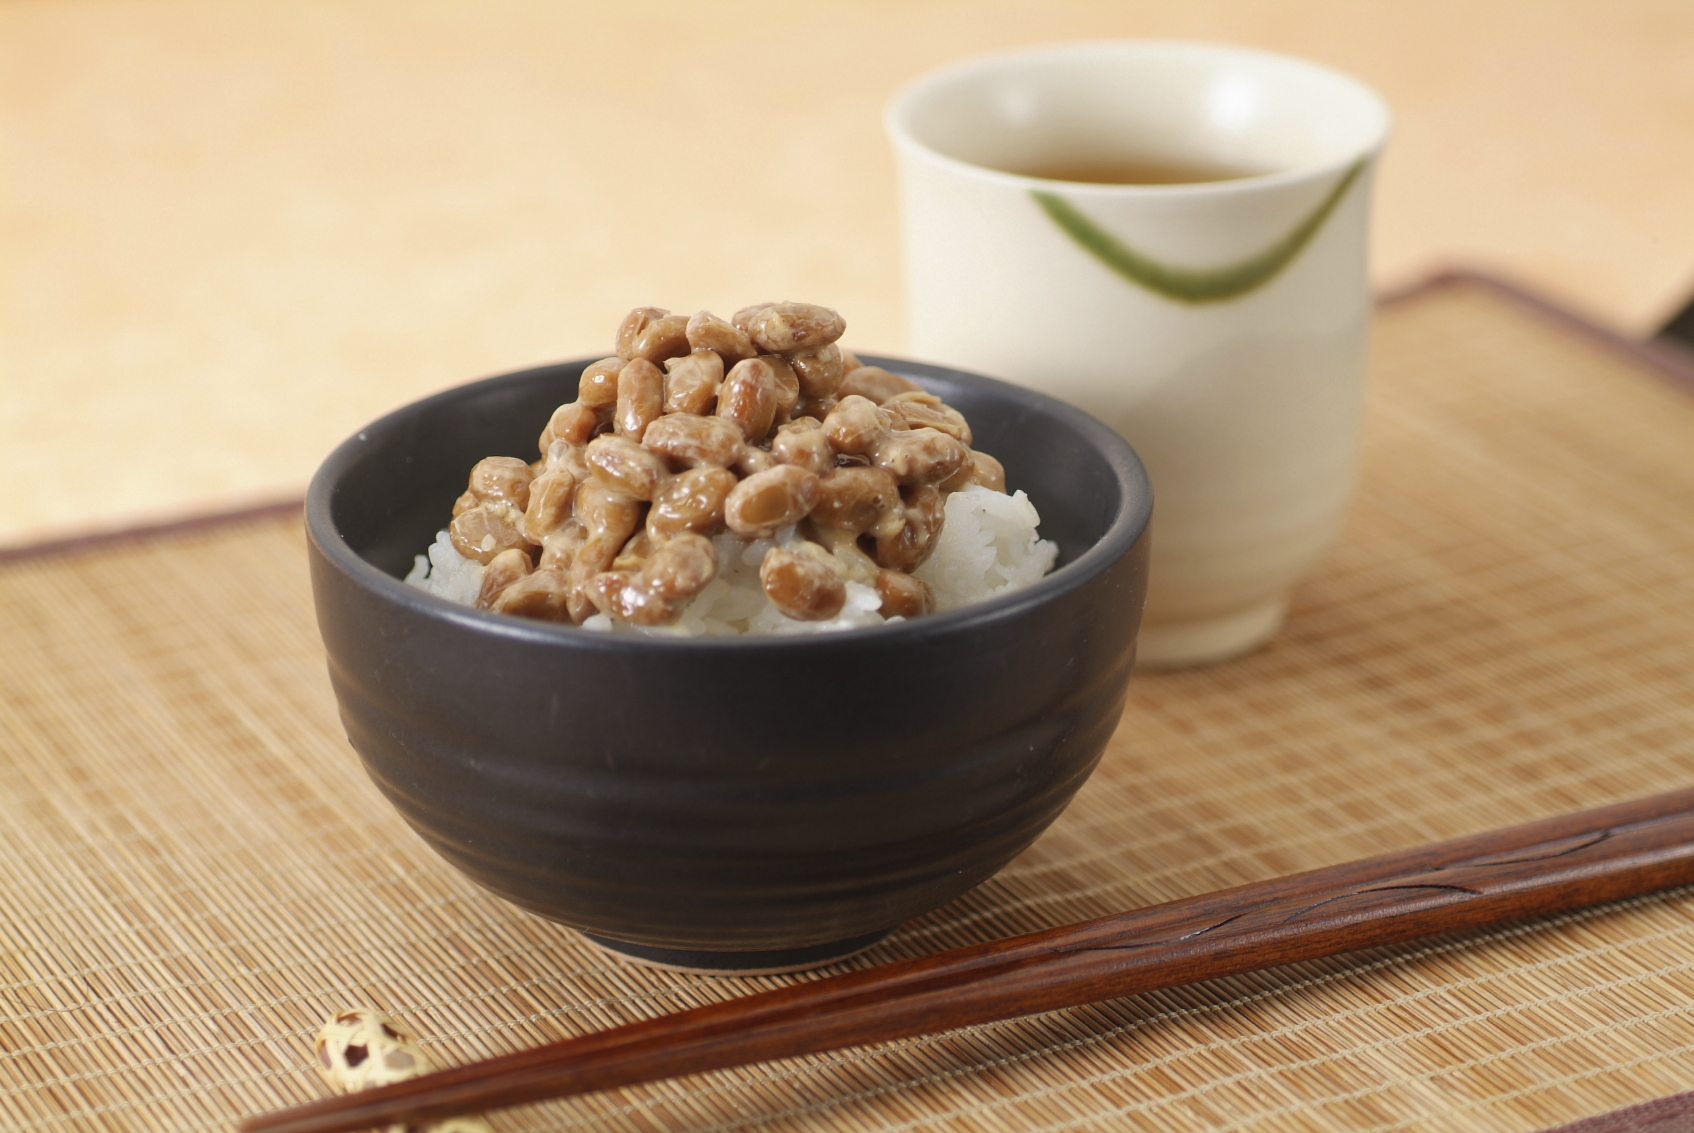 A jellegzetes szagú nattō a japánok kedvelt étele (Fotó: Tumblr)